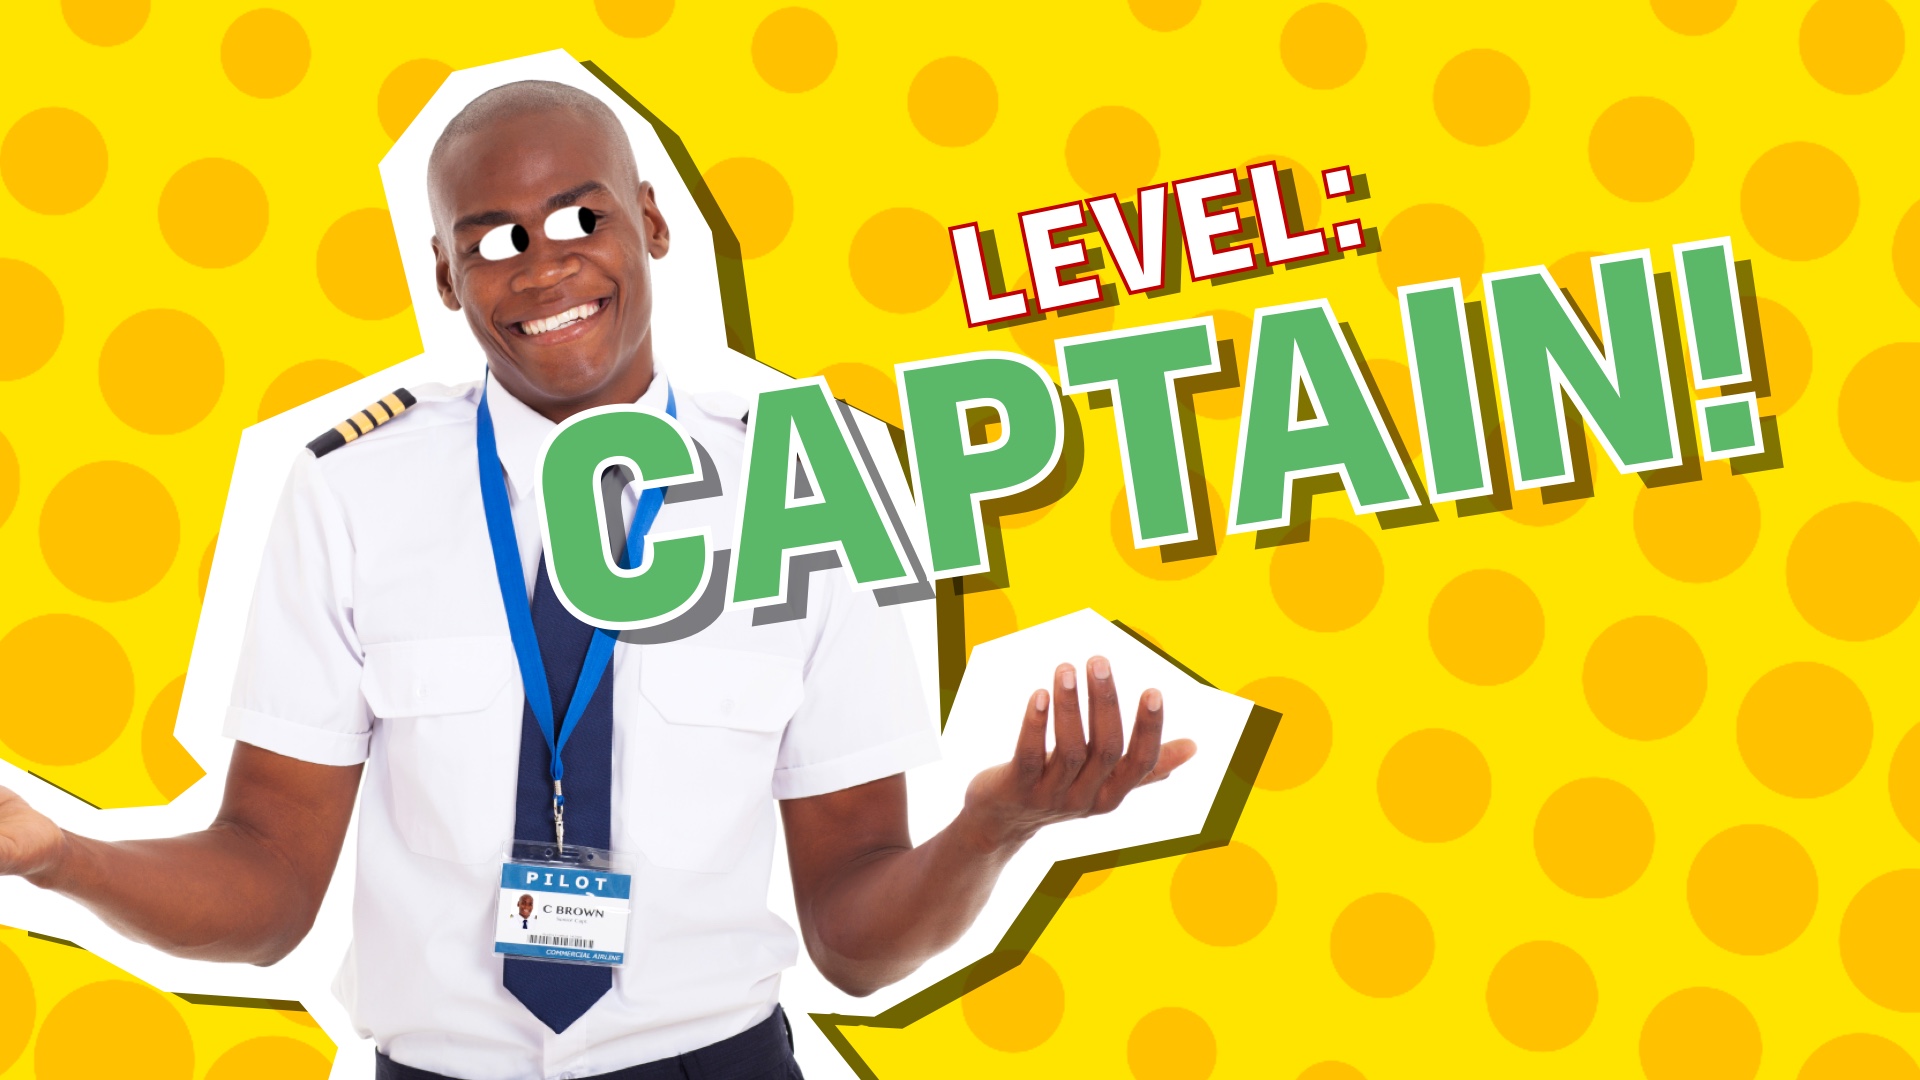 Level: Captain